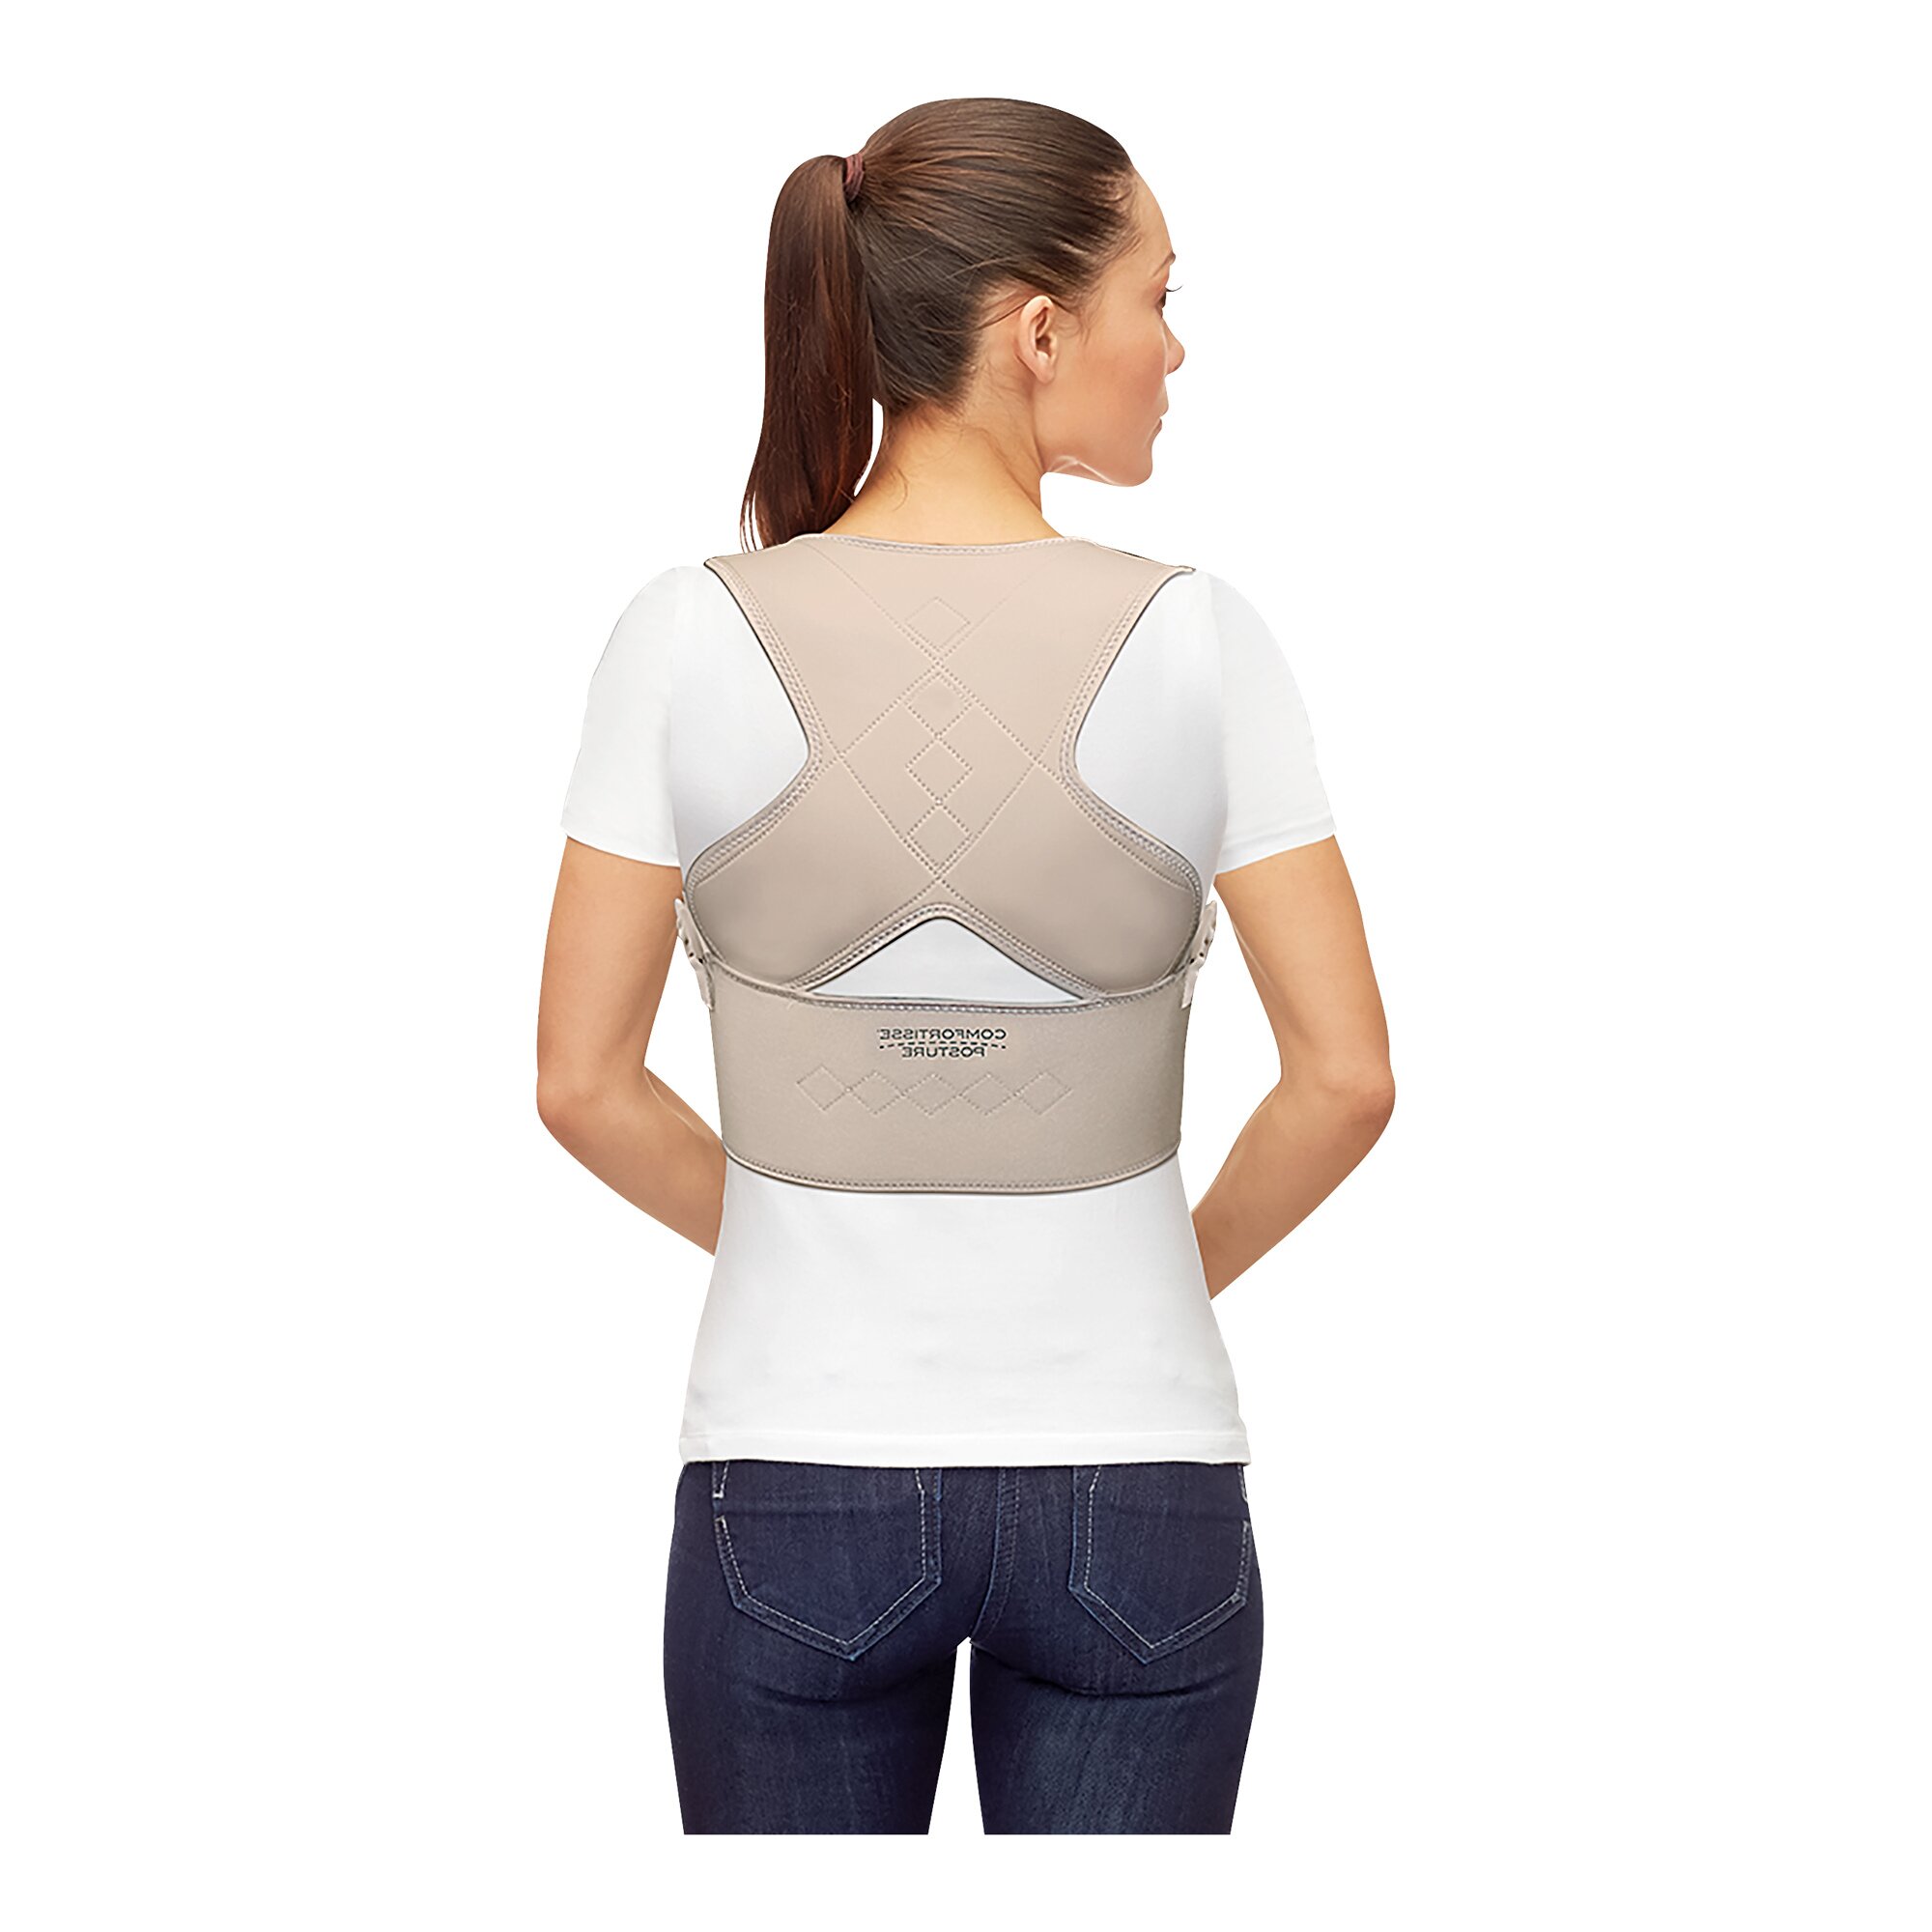 Image of "Comfortisse Posture" - Rückenstabilisator von Mediashop, Größe: S/M